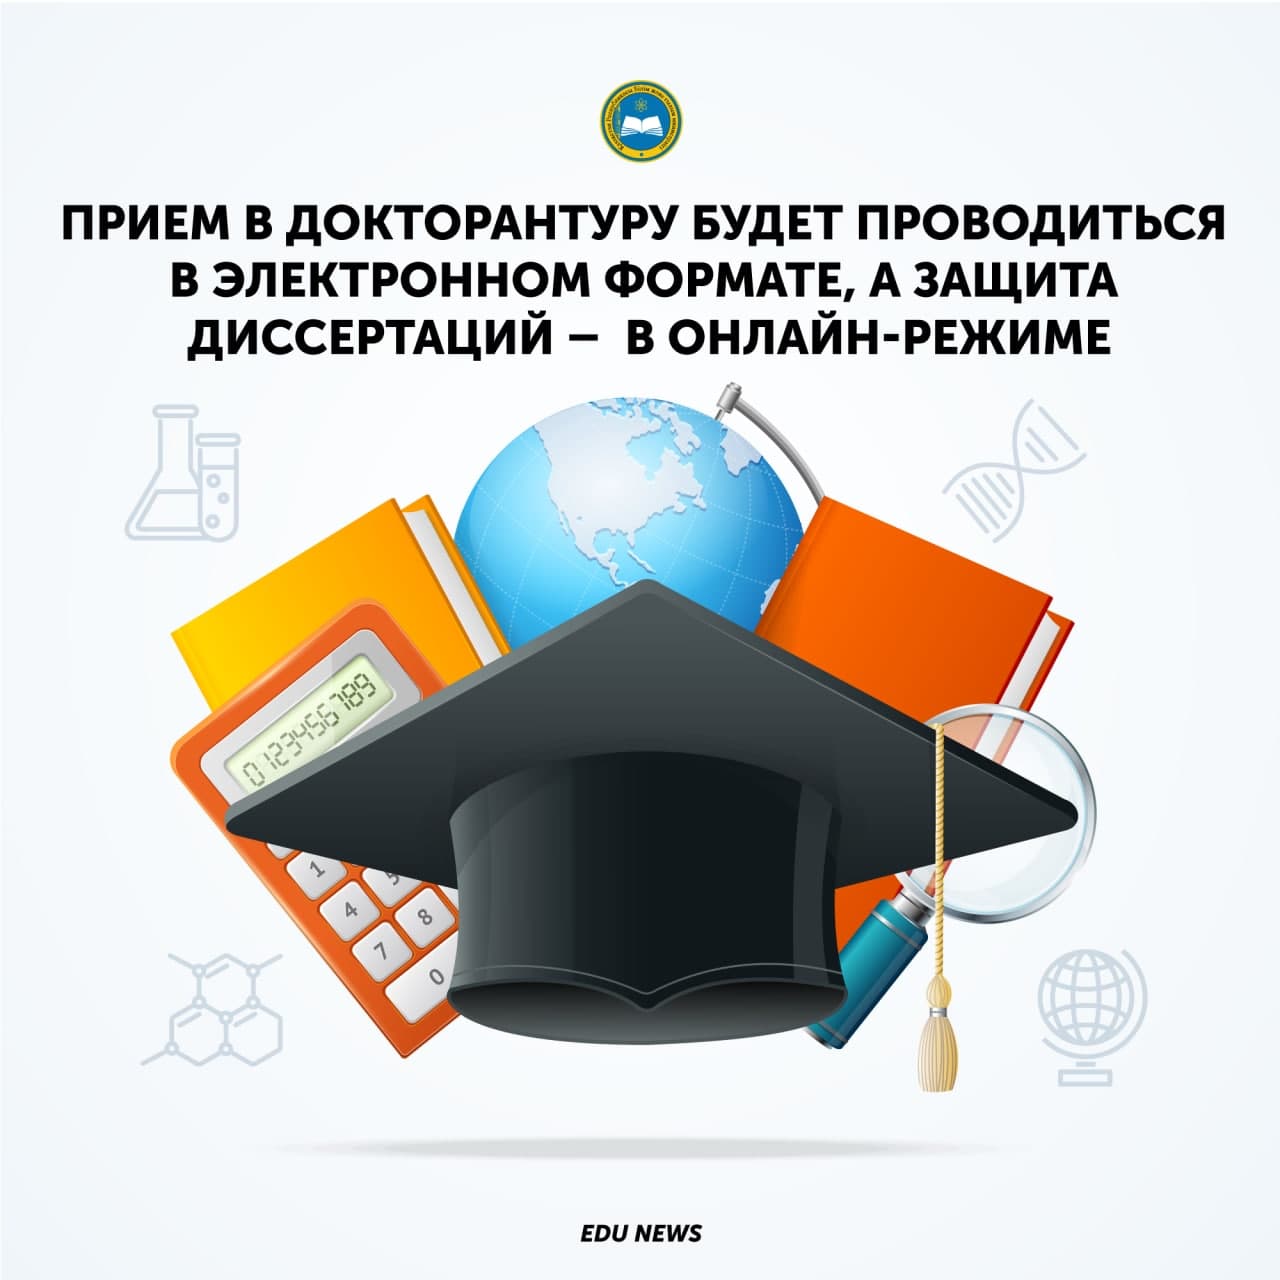 Прием в докторантуру будет проводиться в электронном формате, а защита диссертаций –  в онлайн-режиме